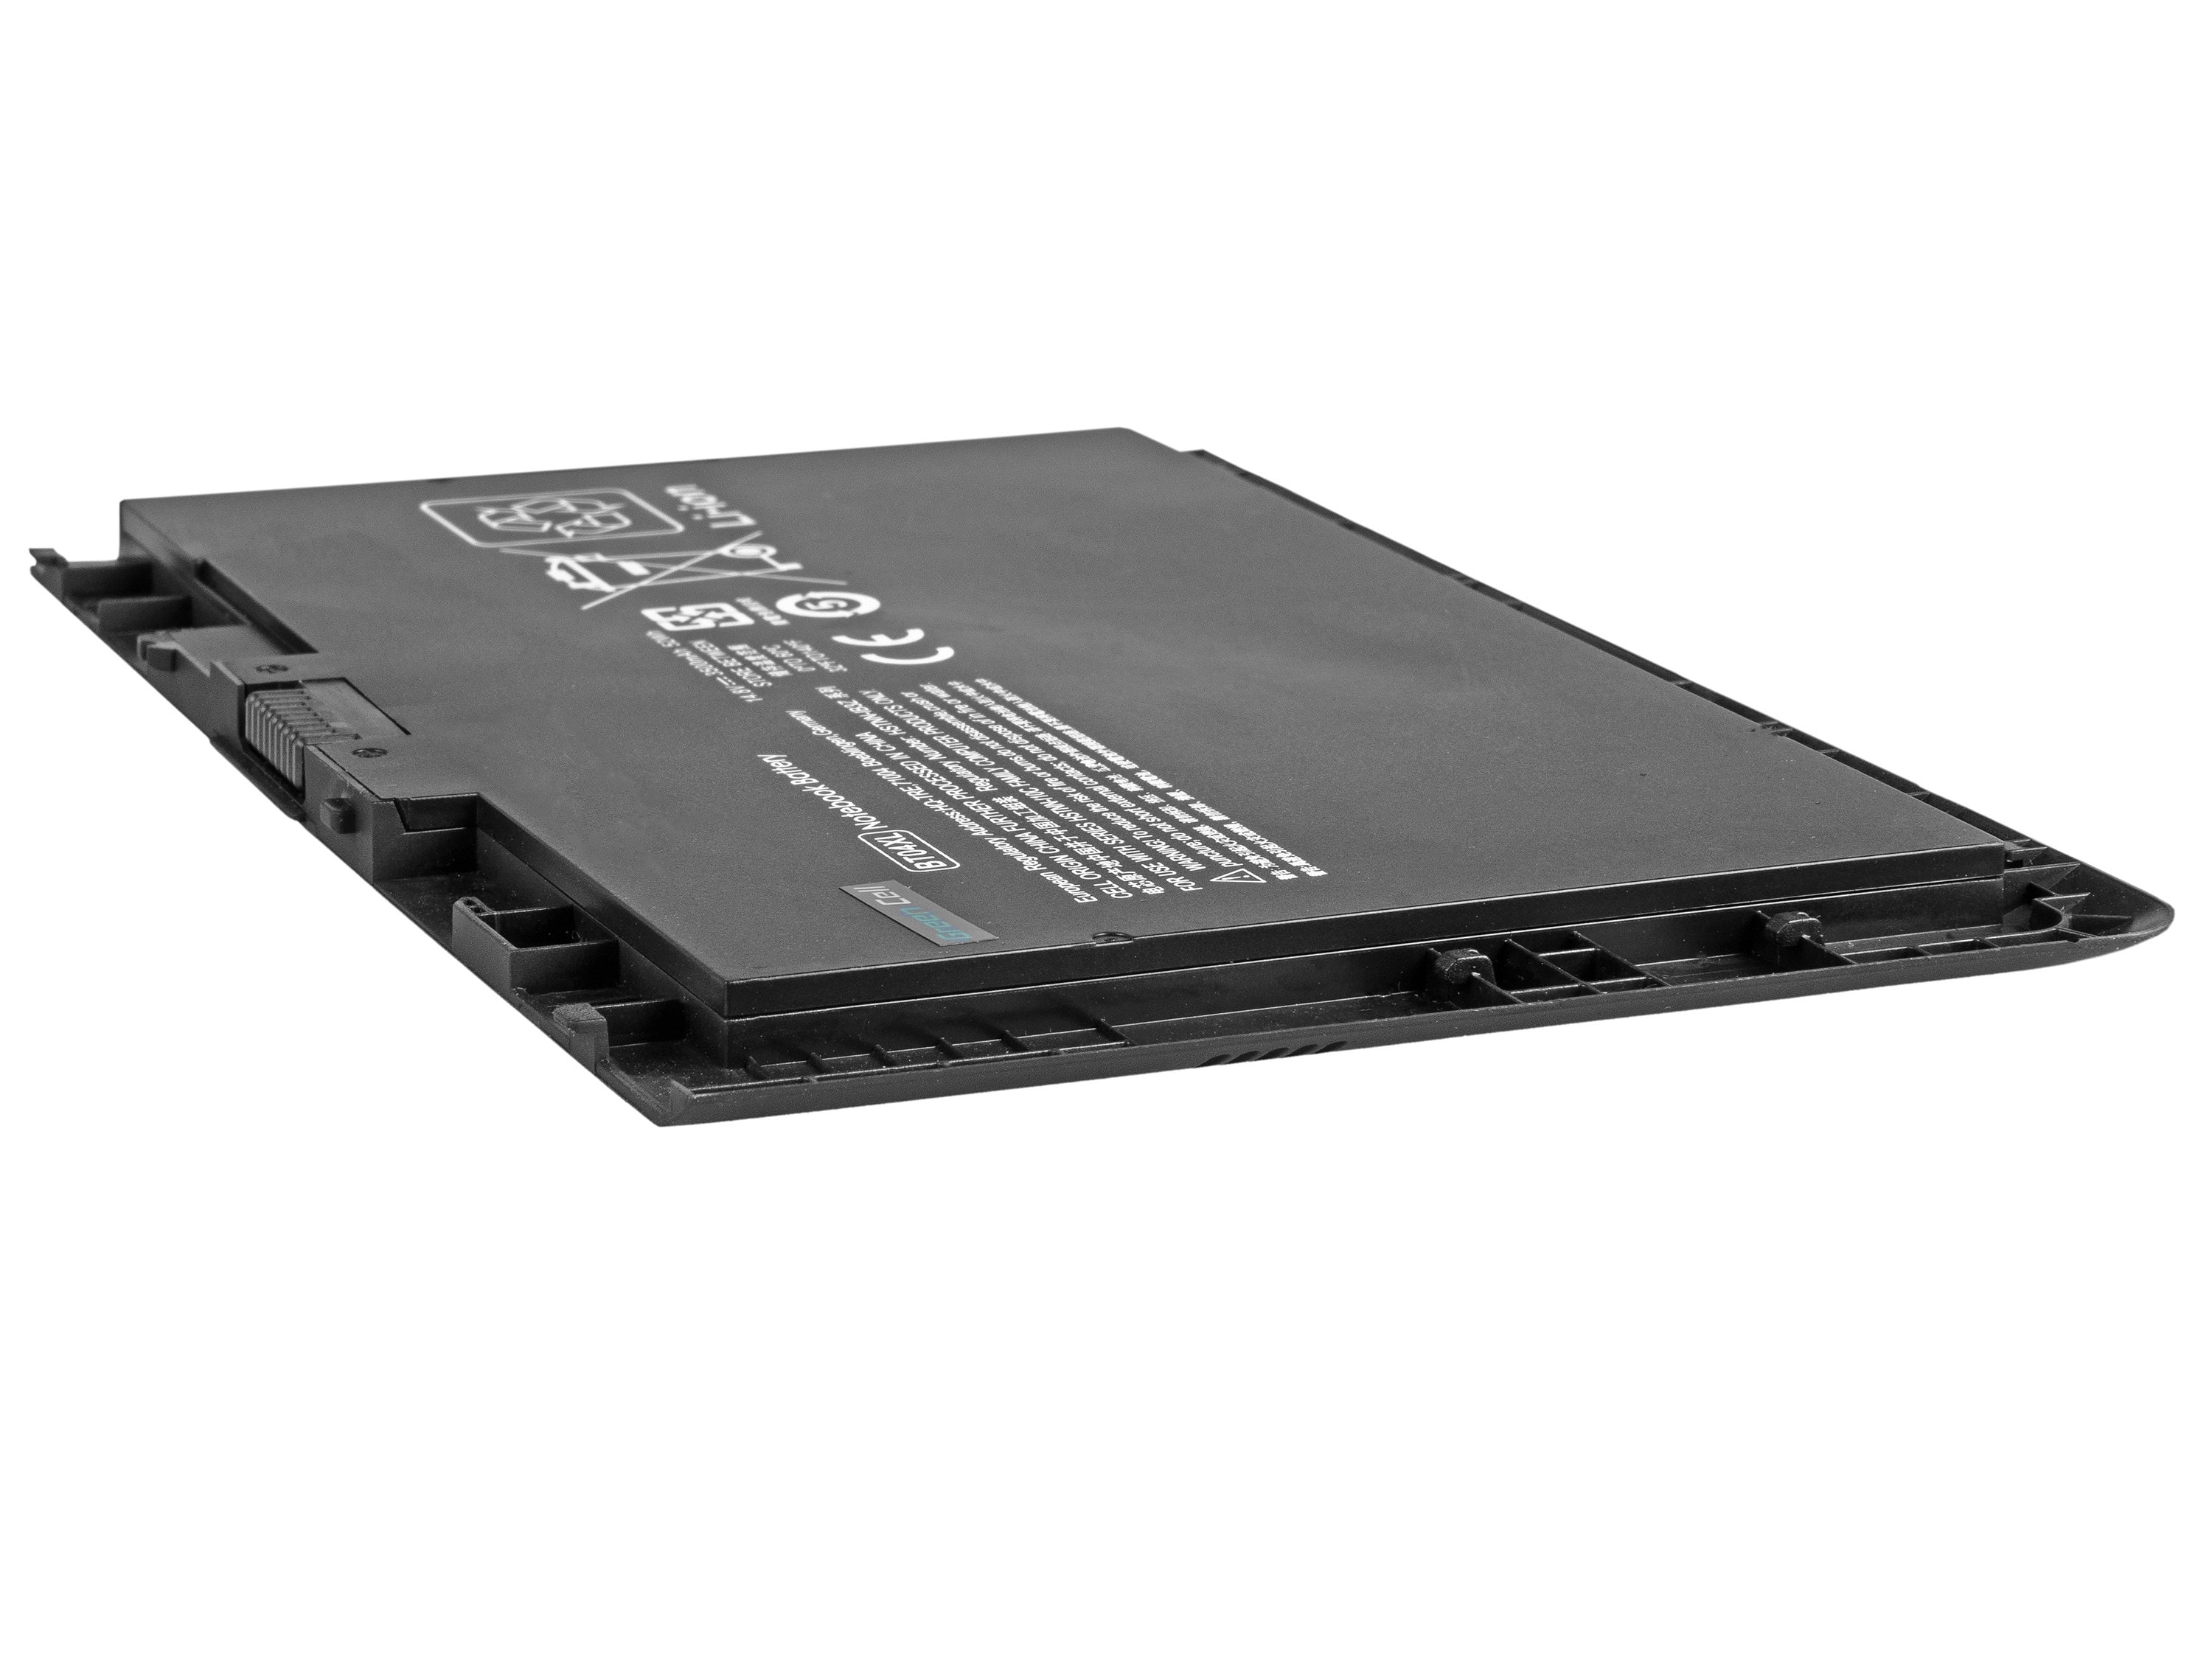 Green Cell laptop batteri til HP EliteBook Folio 9470m 9480m / 14,4V 3500mAh